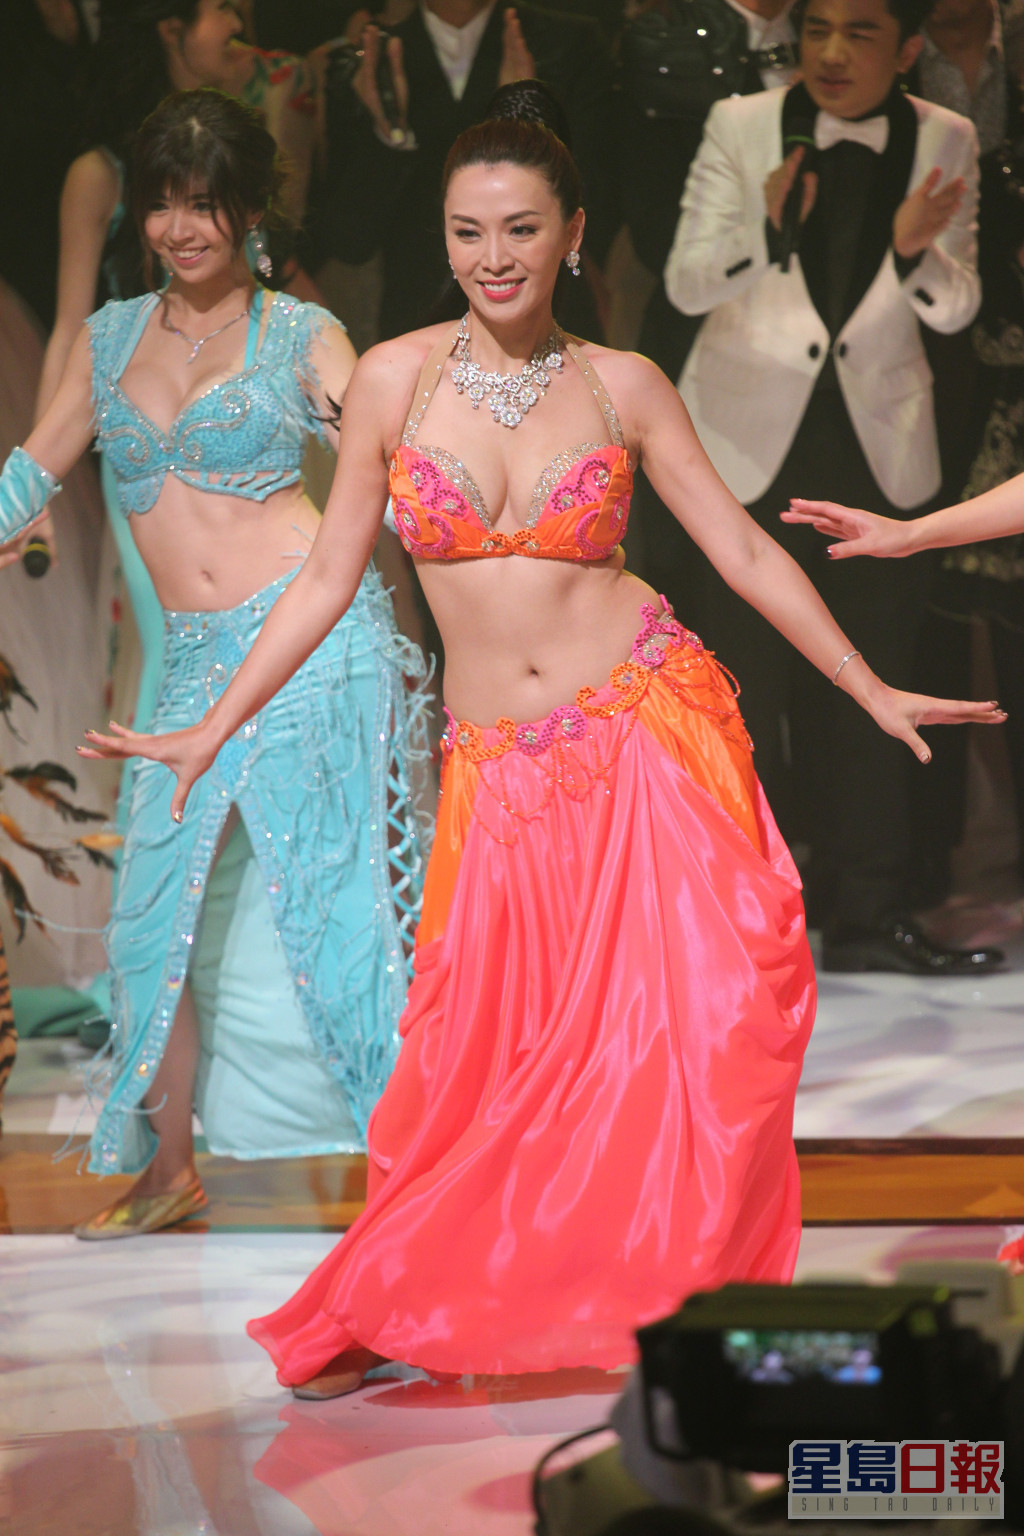 陈炜于2016年的台庆上表演肚皮舞。